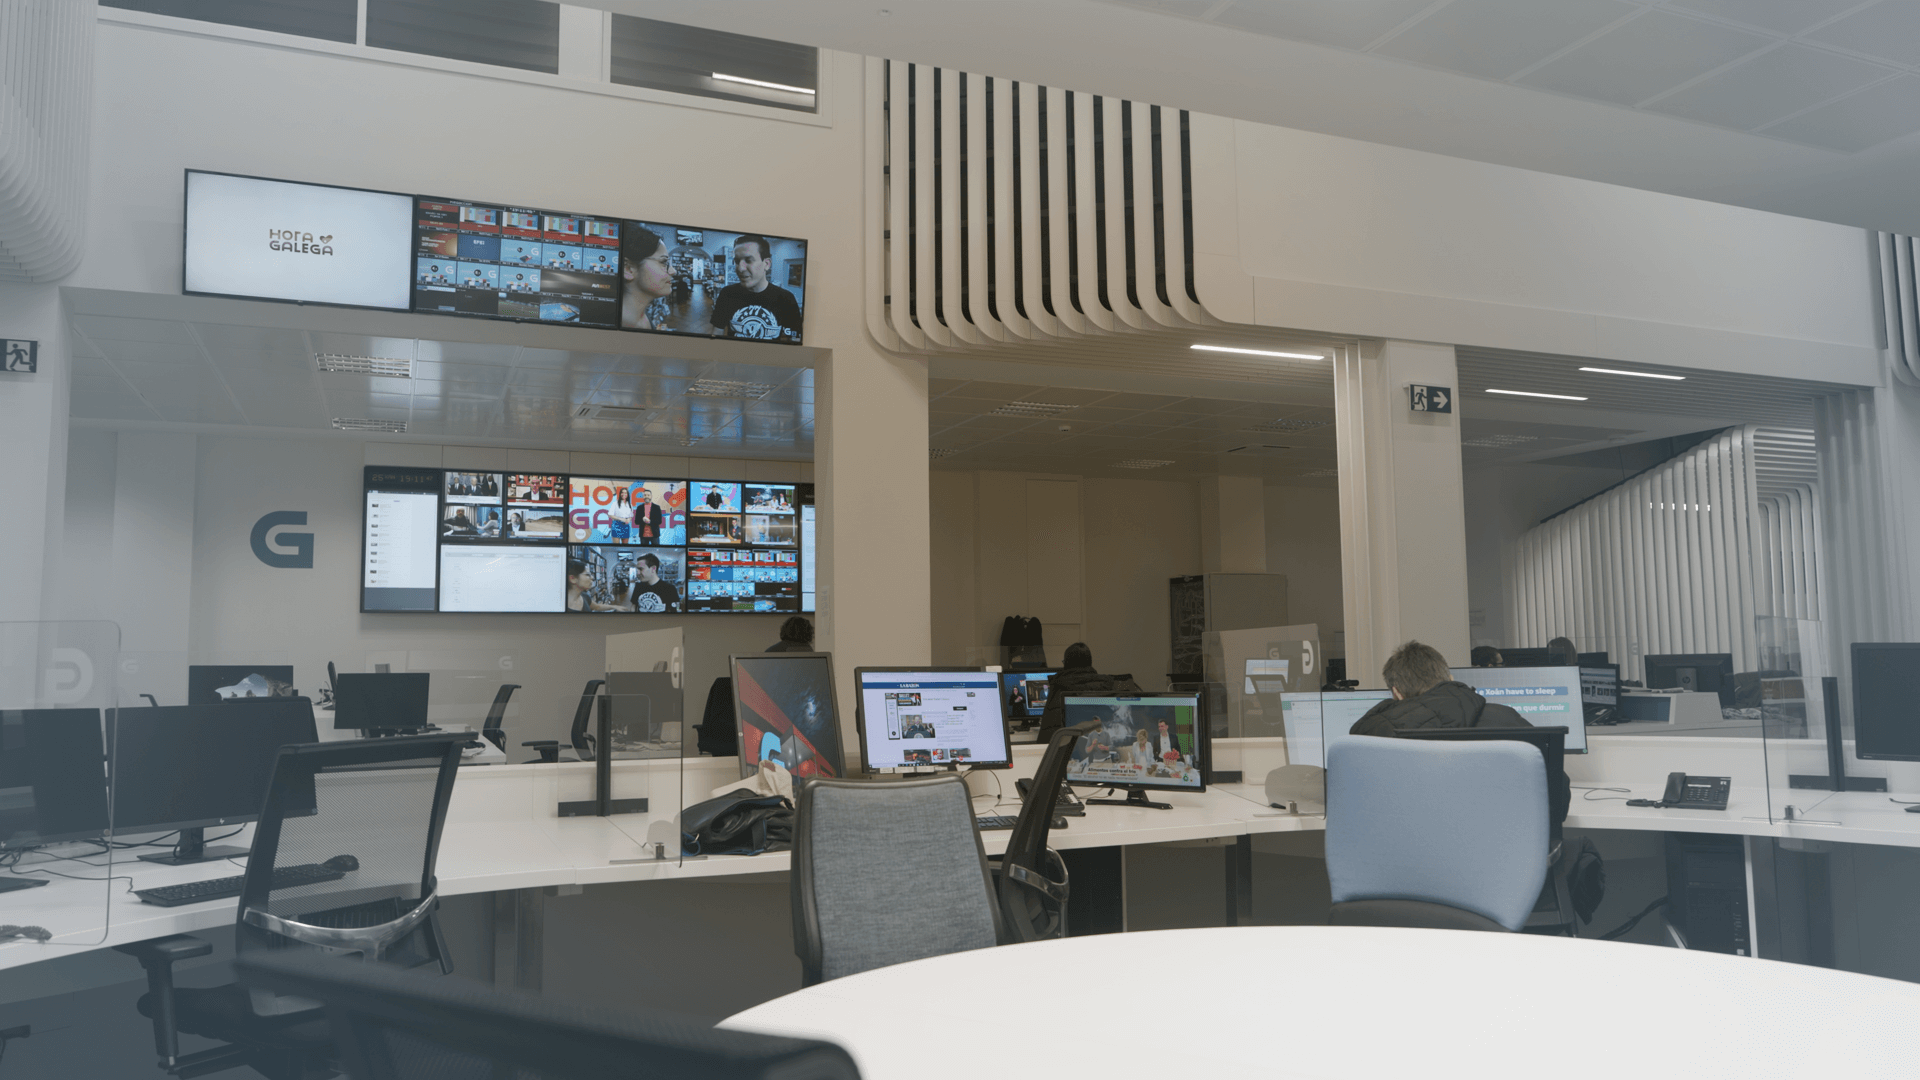 Emissões da TV Galiza arrancaram quatro anos depois do Estatuto da autonomia